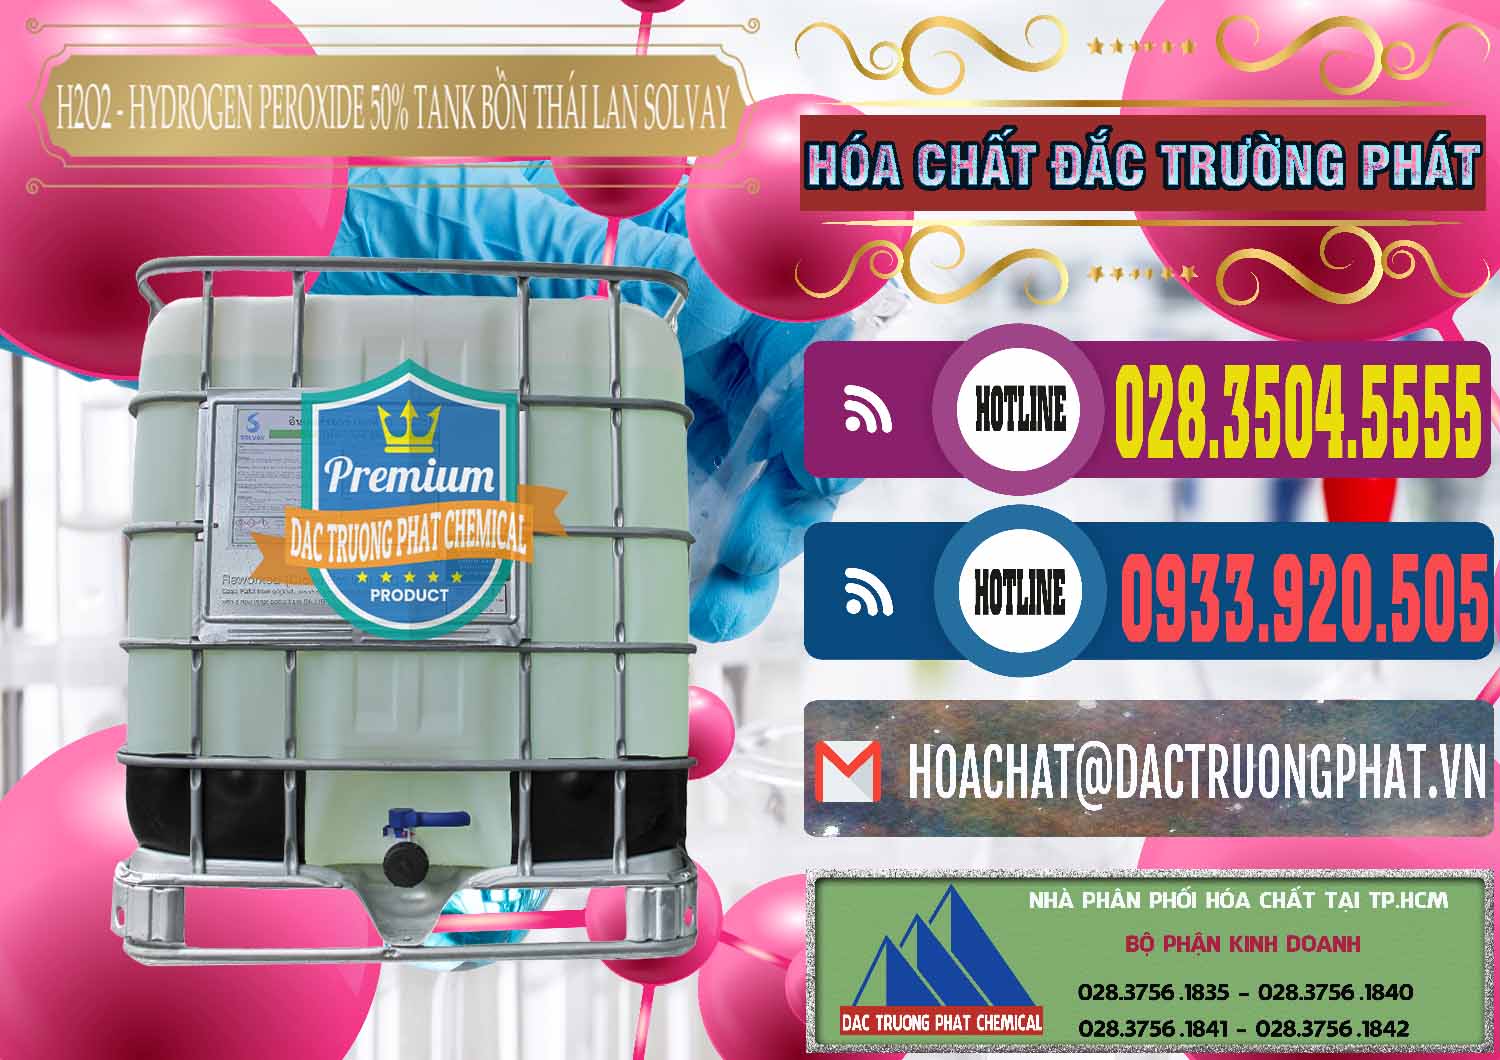 Đơn vị cung ứng và bán H2O2 - Hydrogen Peroxide 50% Tank IBC Bồn Thái Lan Solvay - 0072 - Cty cung cấp & bán hóa chất tại TP.HCM - muabanhoachat.com.vn